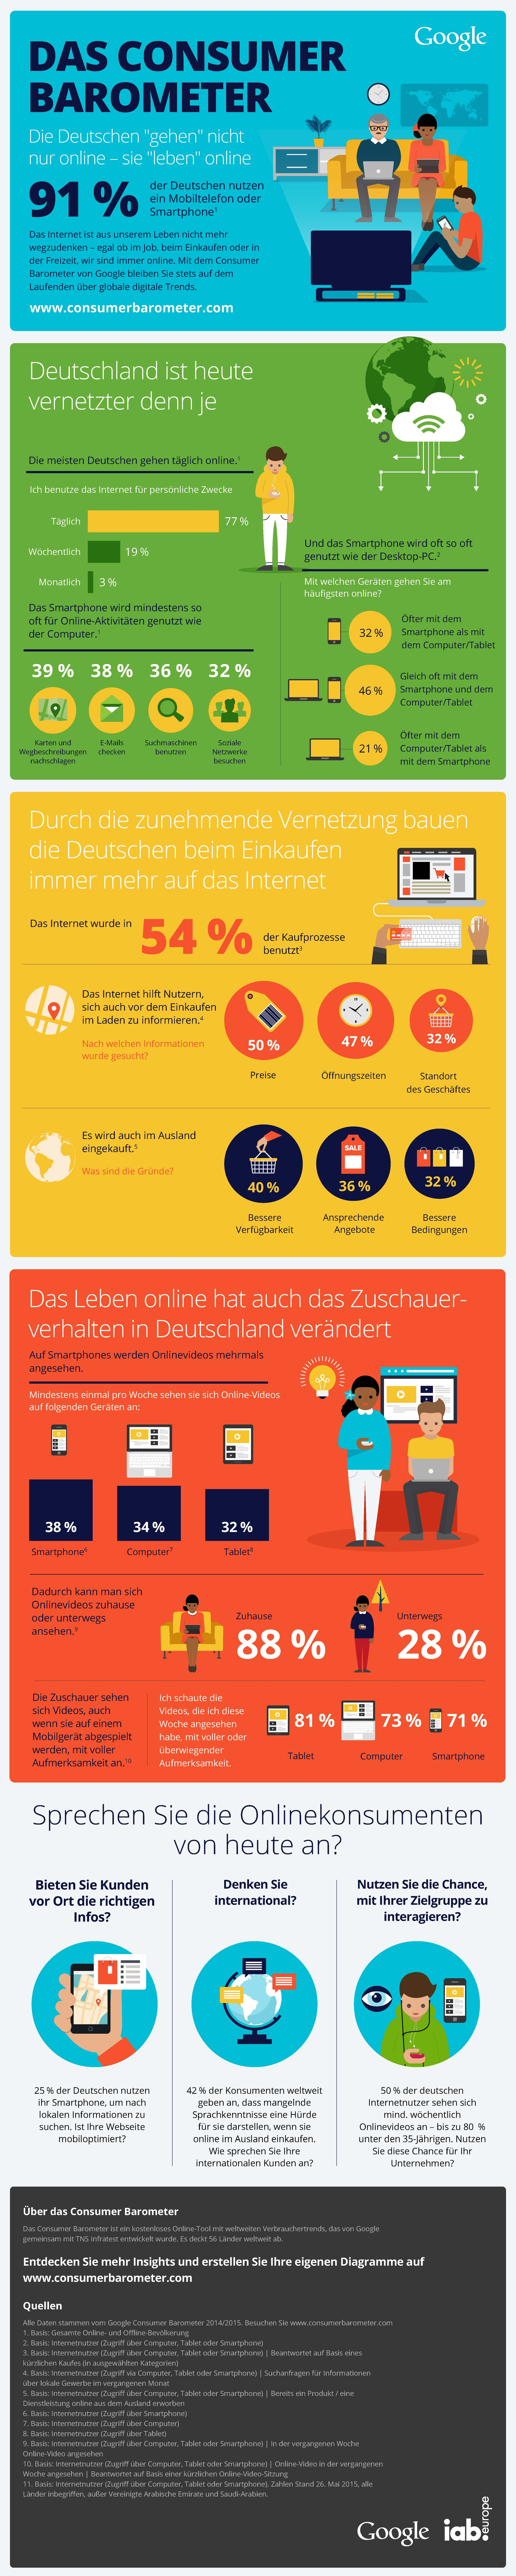 Deutschen leben online - Consumer Barometer Google Deutschland - Juni 2015